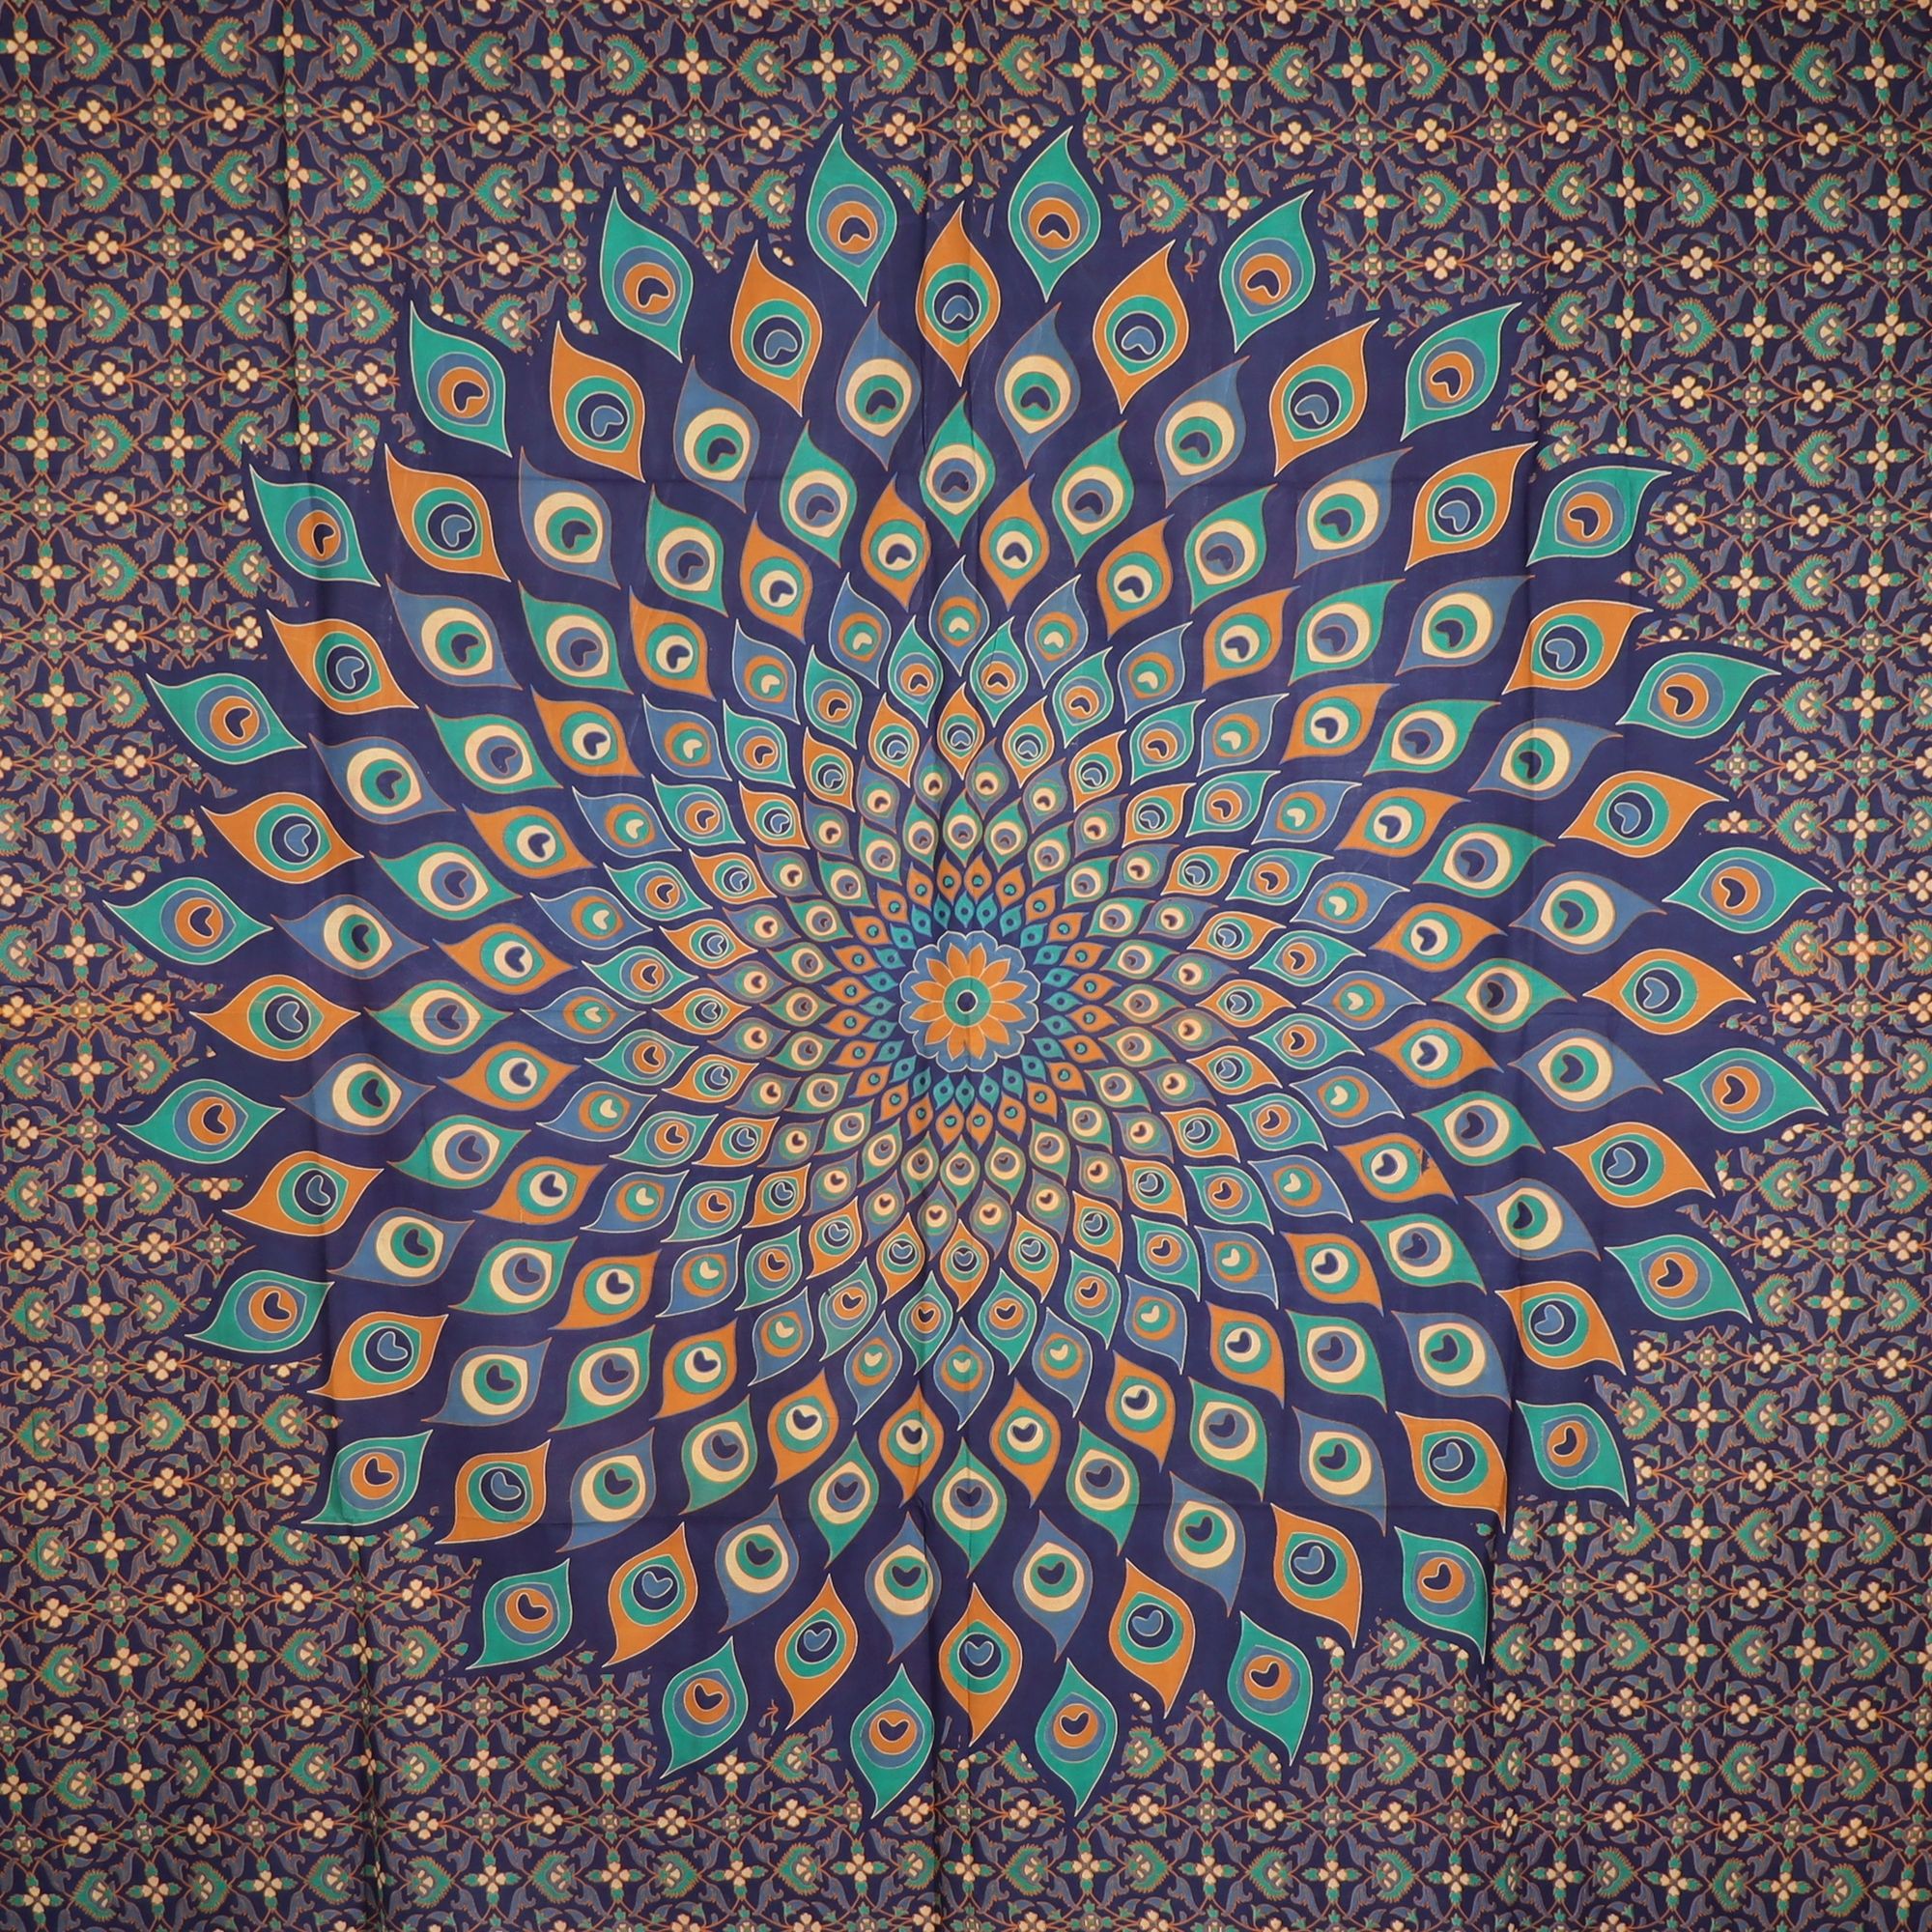 Wandtuch XXL 210x230 - Mandala Lotus Pfau - 100% Baumwolle - detailreicher indischer Druck - mehrfarbig - dekoratives Tuch, Wandbild, Tagesdecke, Bedcover, Vorhang, Picknick-Decke, Strandtuch